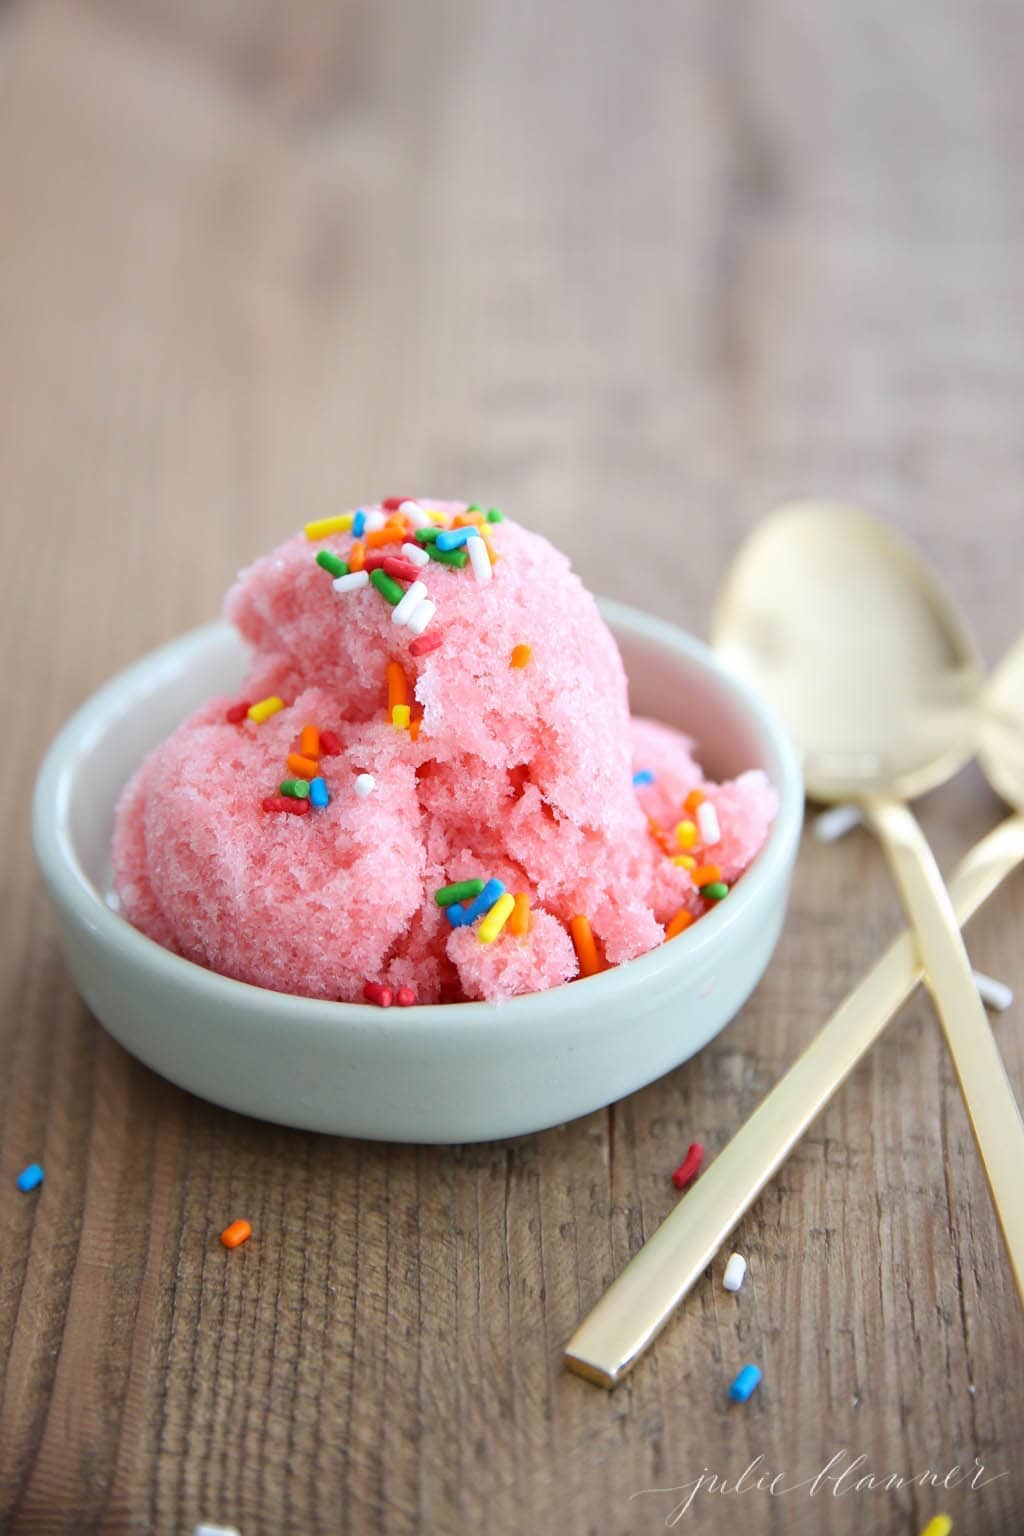 3 Ingredient Strawberry Snow Ice Cream Recipe